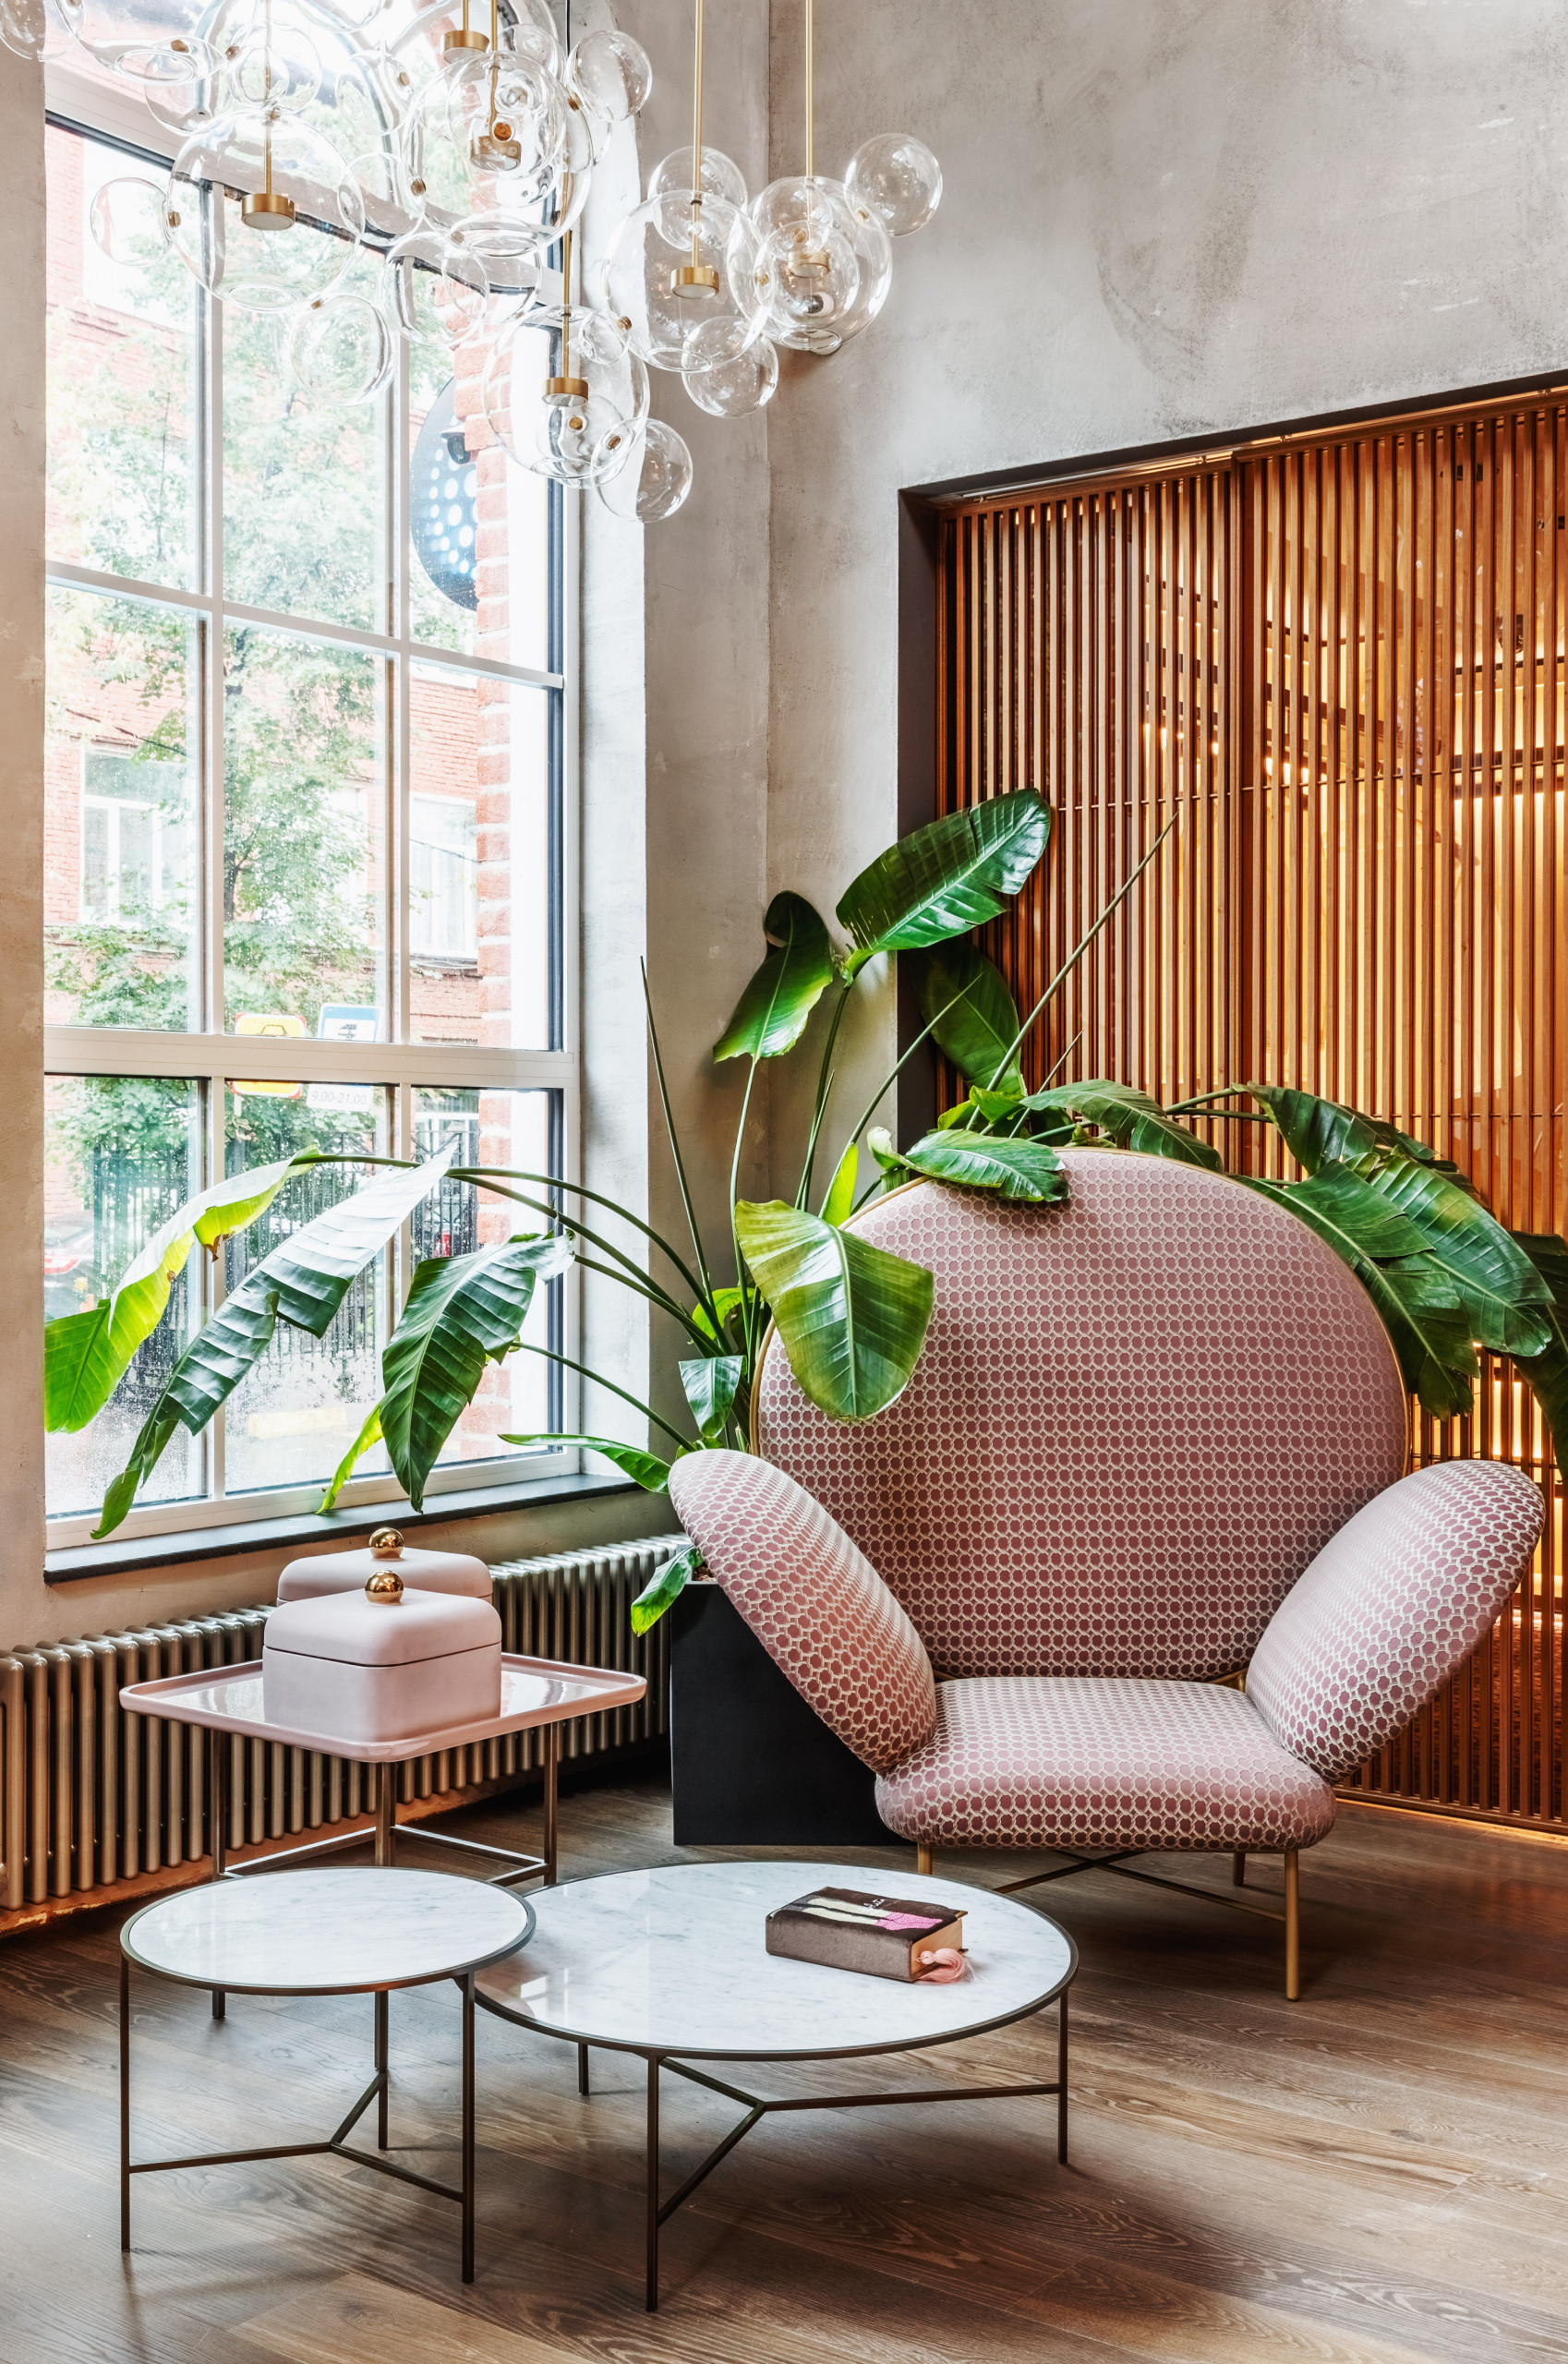 5 комнатных растений для интерьера в стиле минимализм